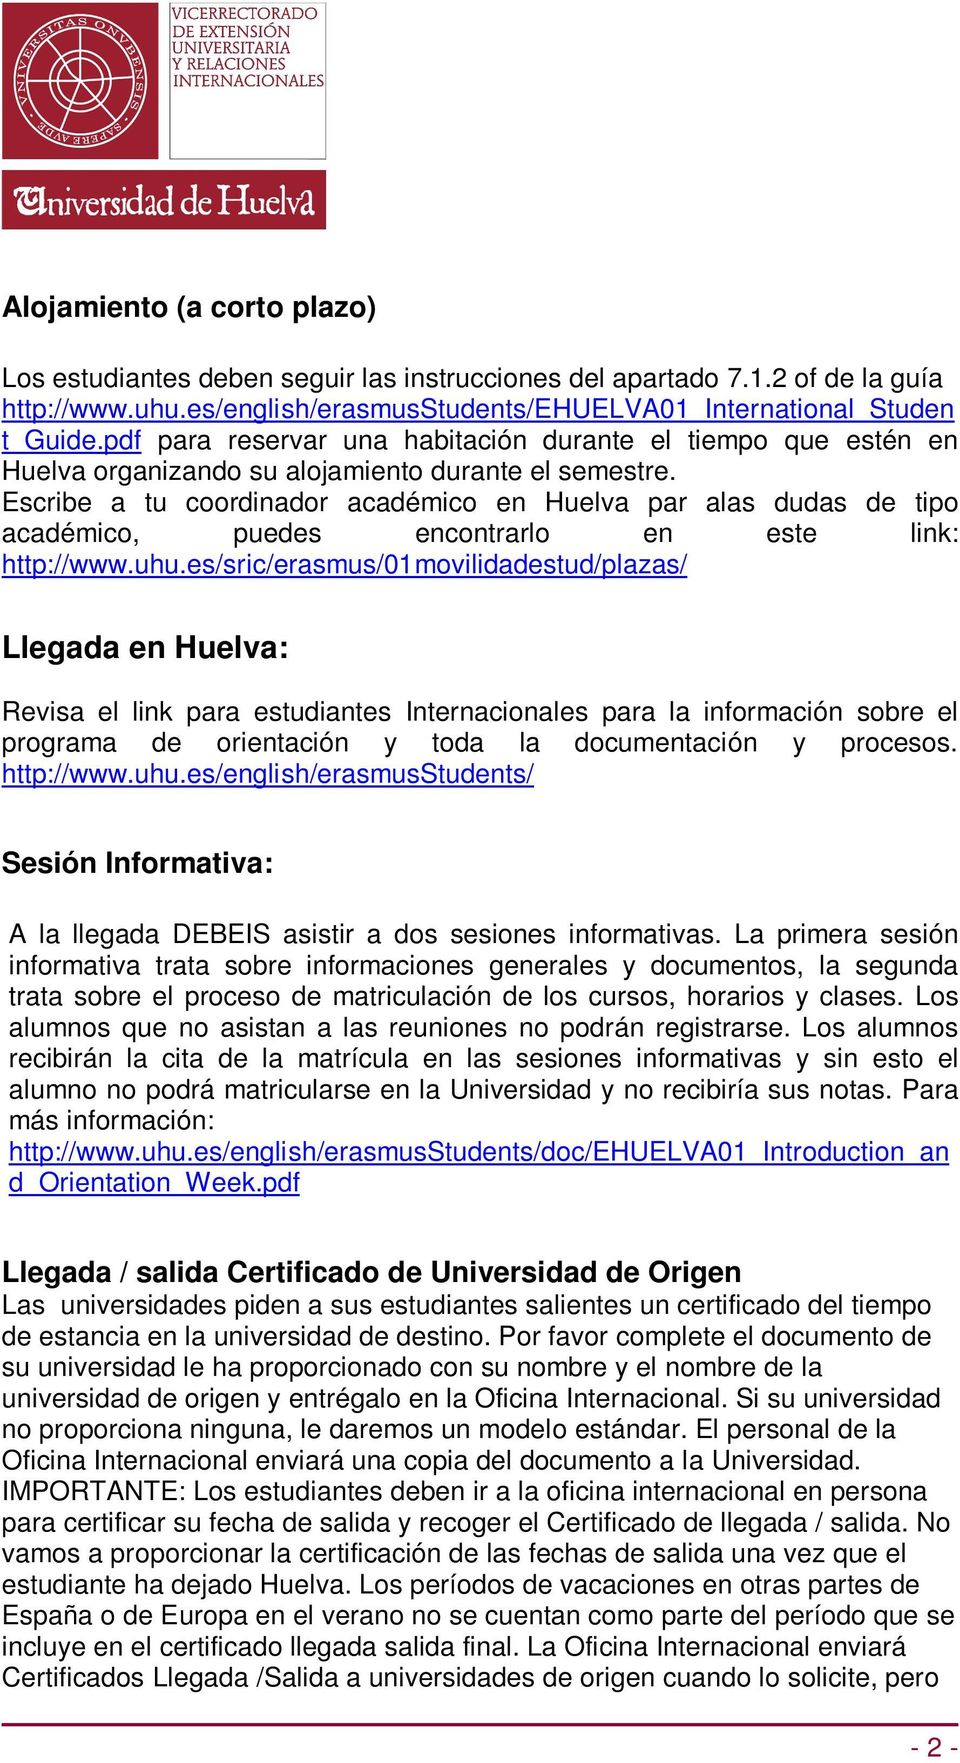 Escribe a tu coordinador académico en Huelva par alas dudas de tipo académico, puedes encontrarlo en este link: http://www.uhu.